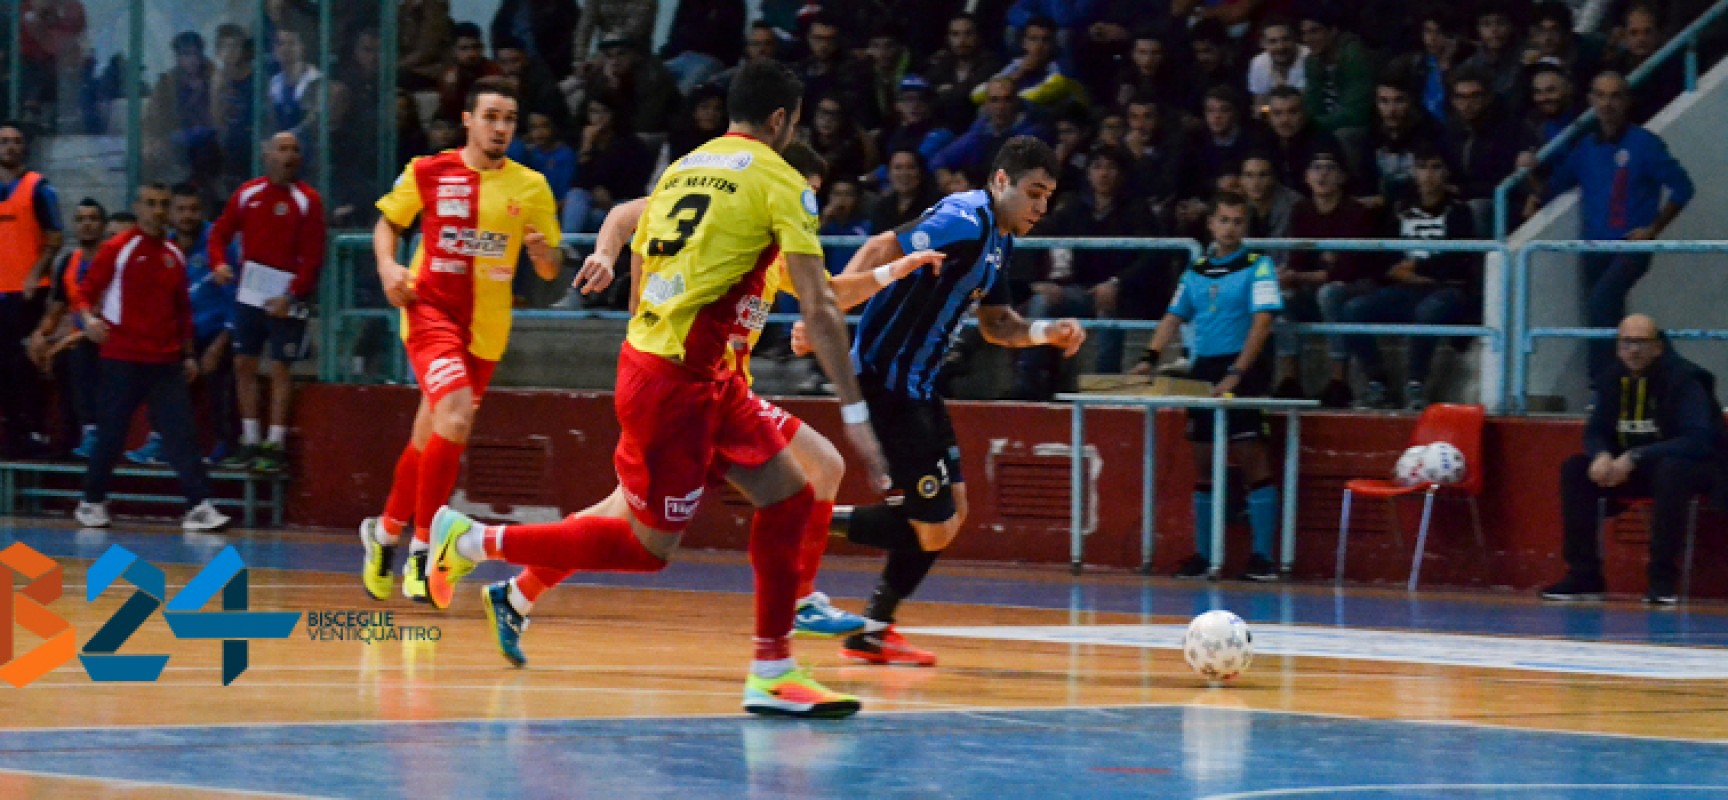 Pirotecnico 6-6 tra Futsal Bisceglie e Cisternino, al PalaDolmen vince lo spettacolo